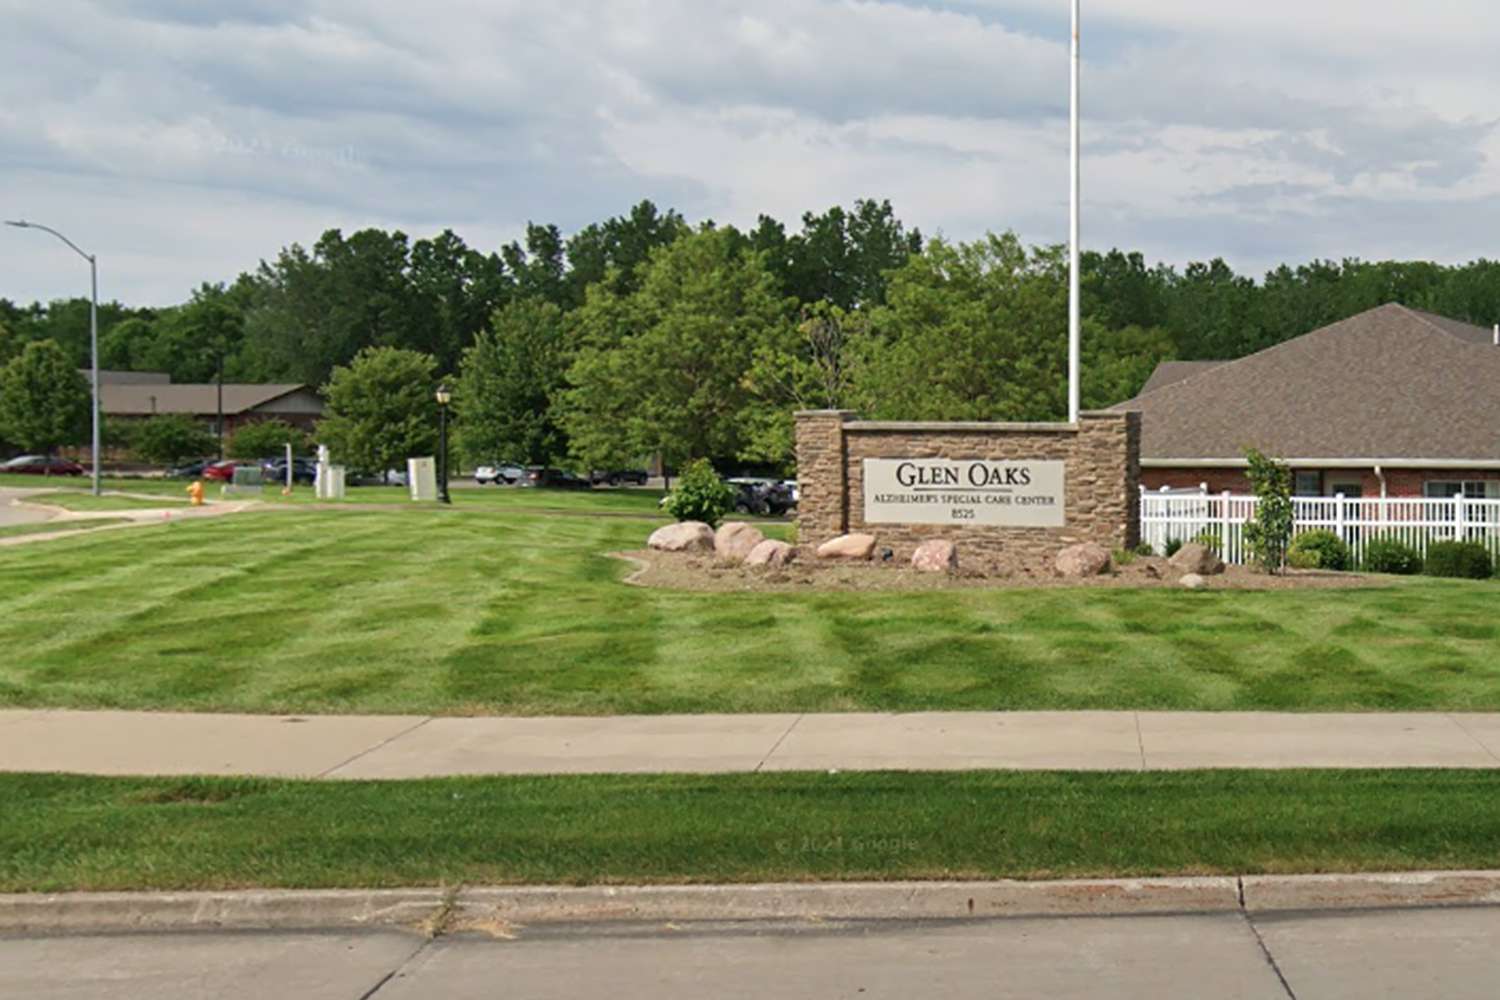 Frau lebend und nach Luft schnappend in Leichensack im Bestattungsunternehmen in Iowa gefunden